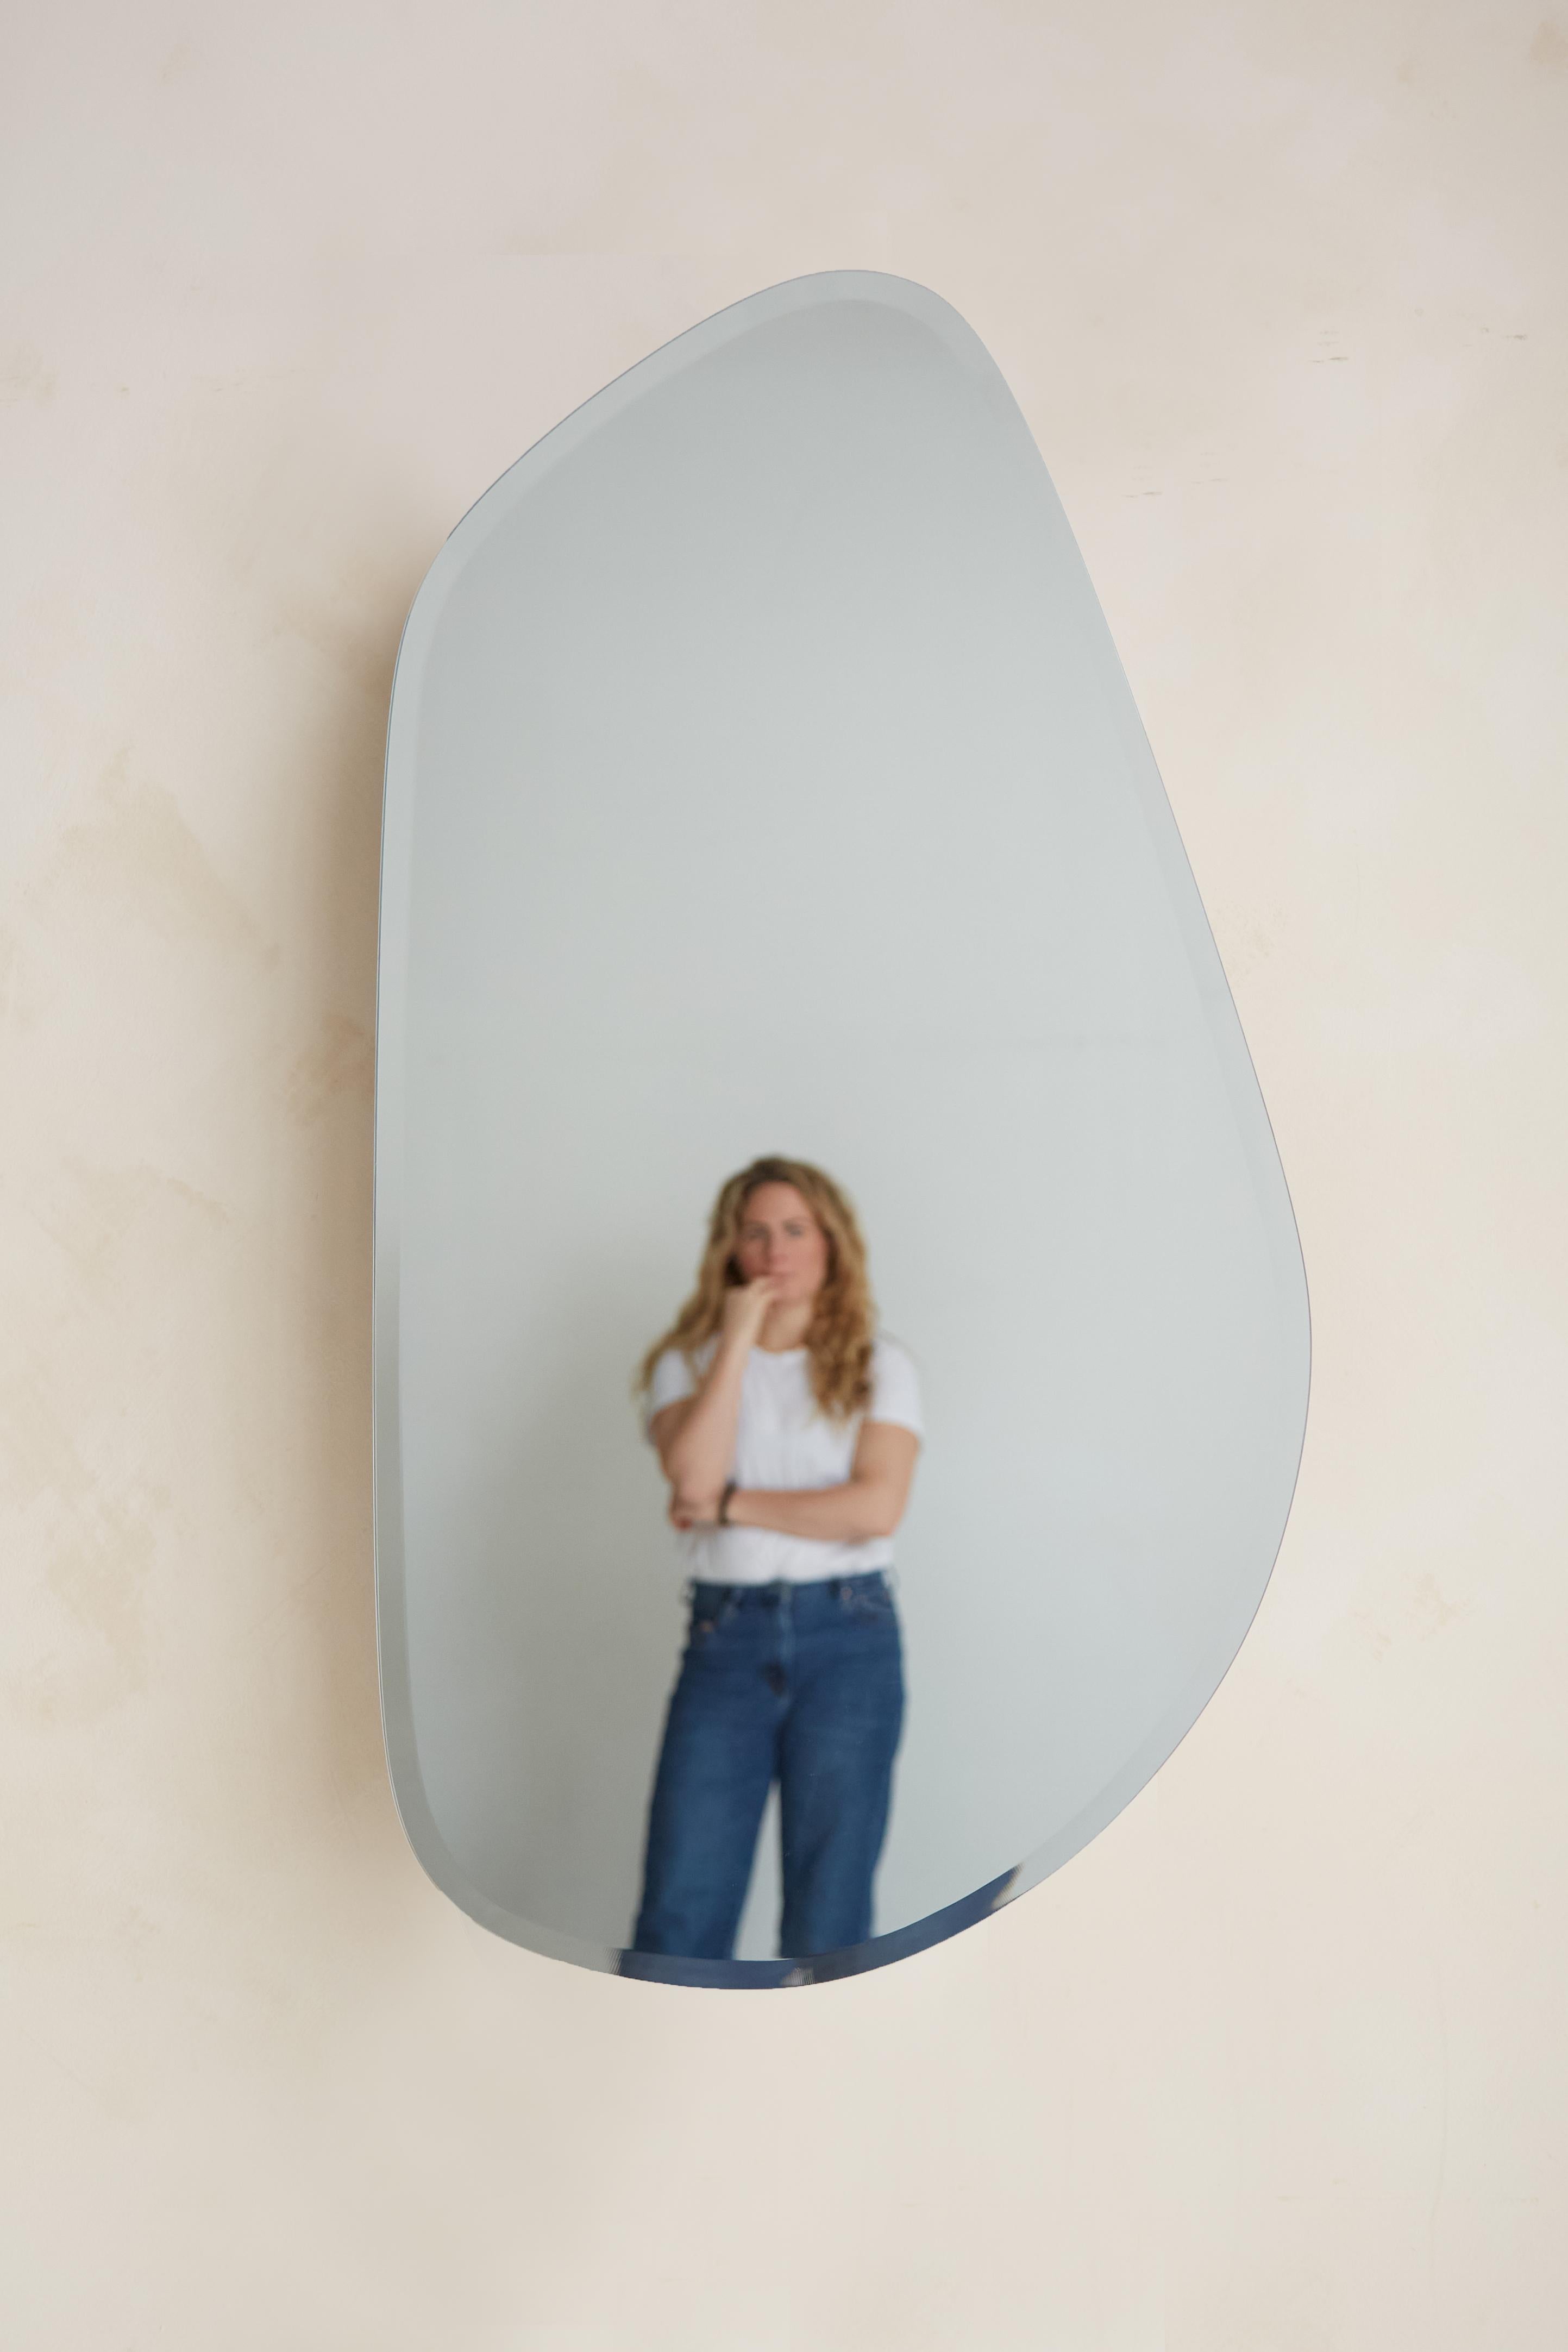 MIROIR GÉOMORPHE
Le miroir Geomorph constitue une rupture visuelle avec le reste de l'ameublement, reprenant la même inspiration en matière de design sans aucun élément en bois visible.  Sa forme organique rappelle les galets de plage doux et